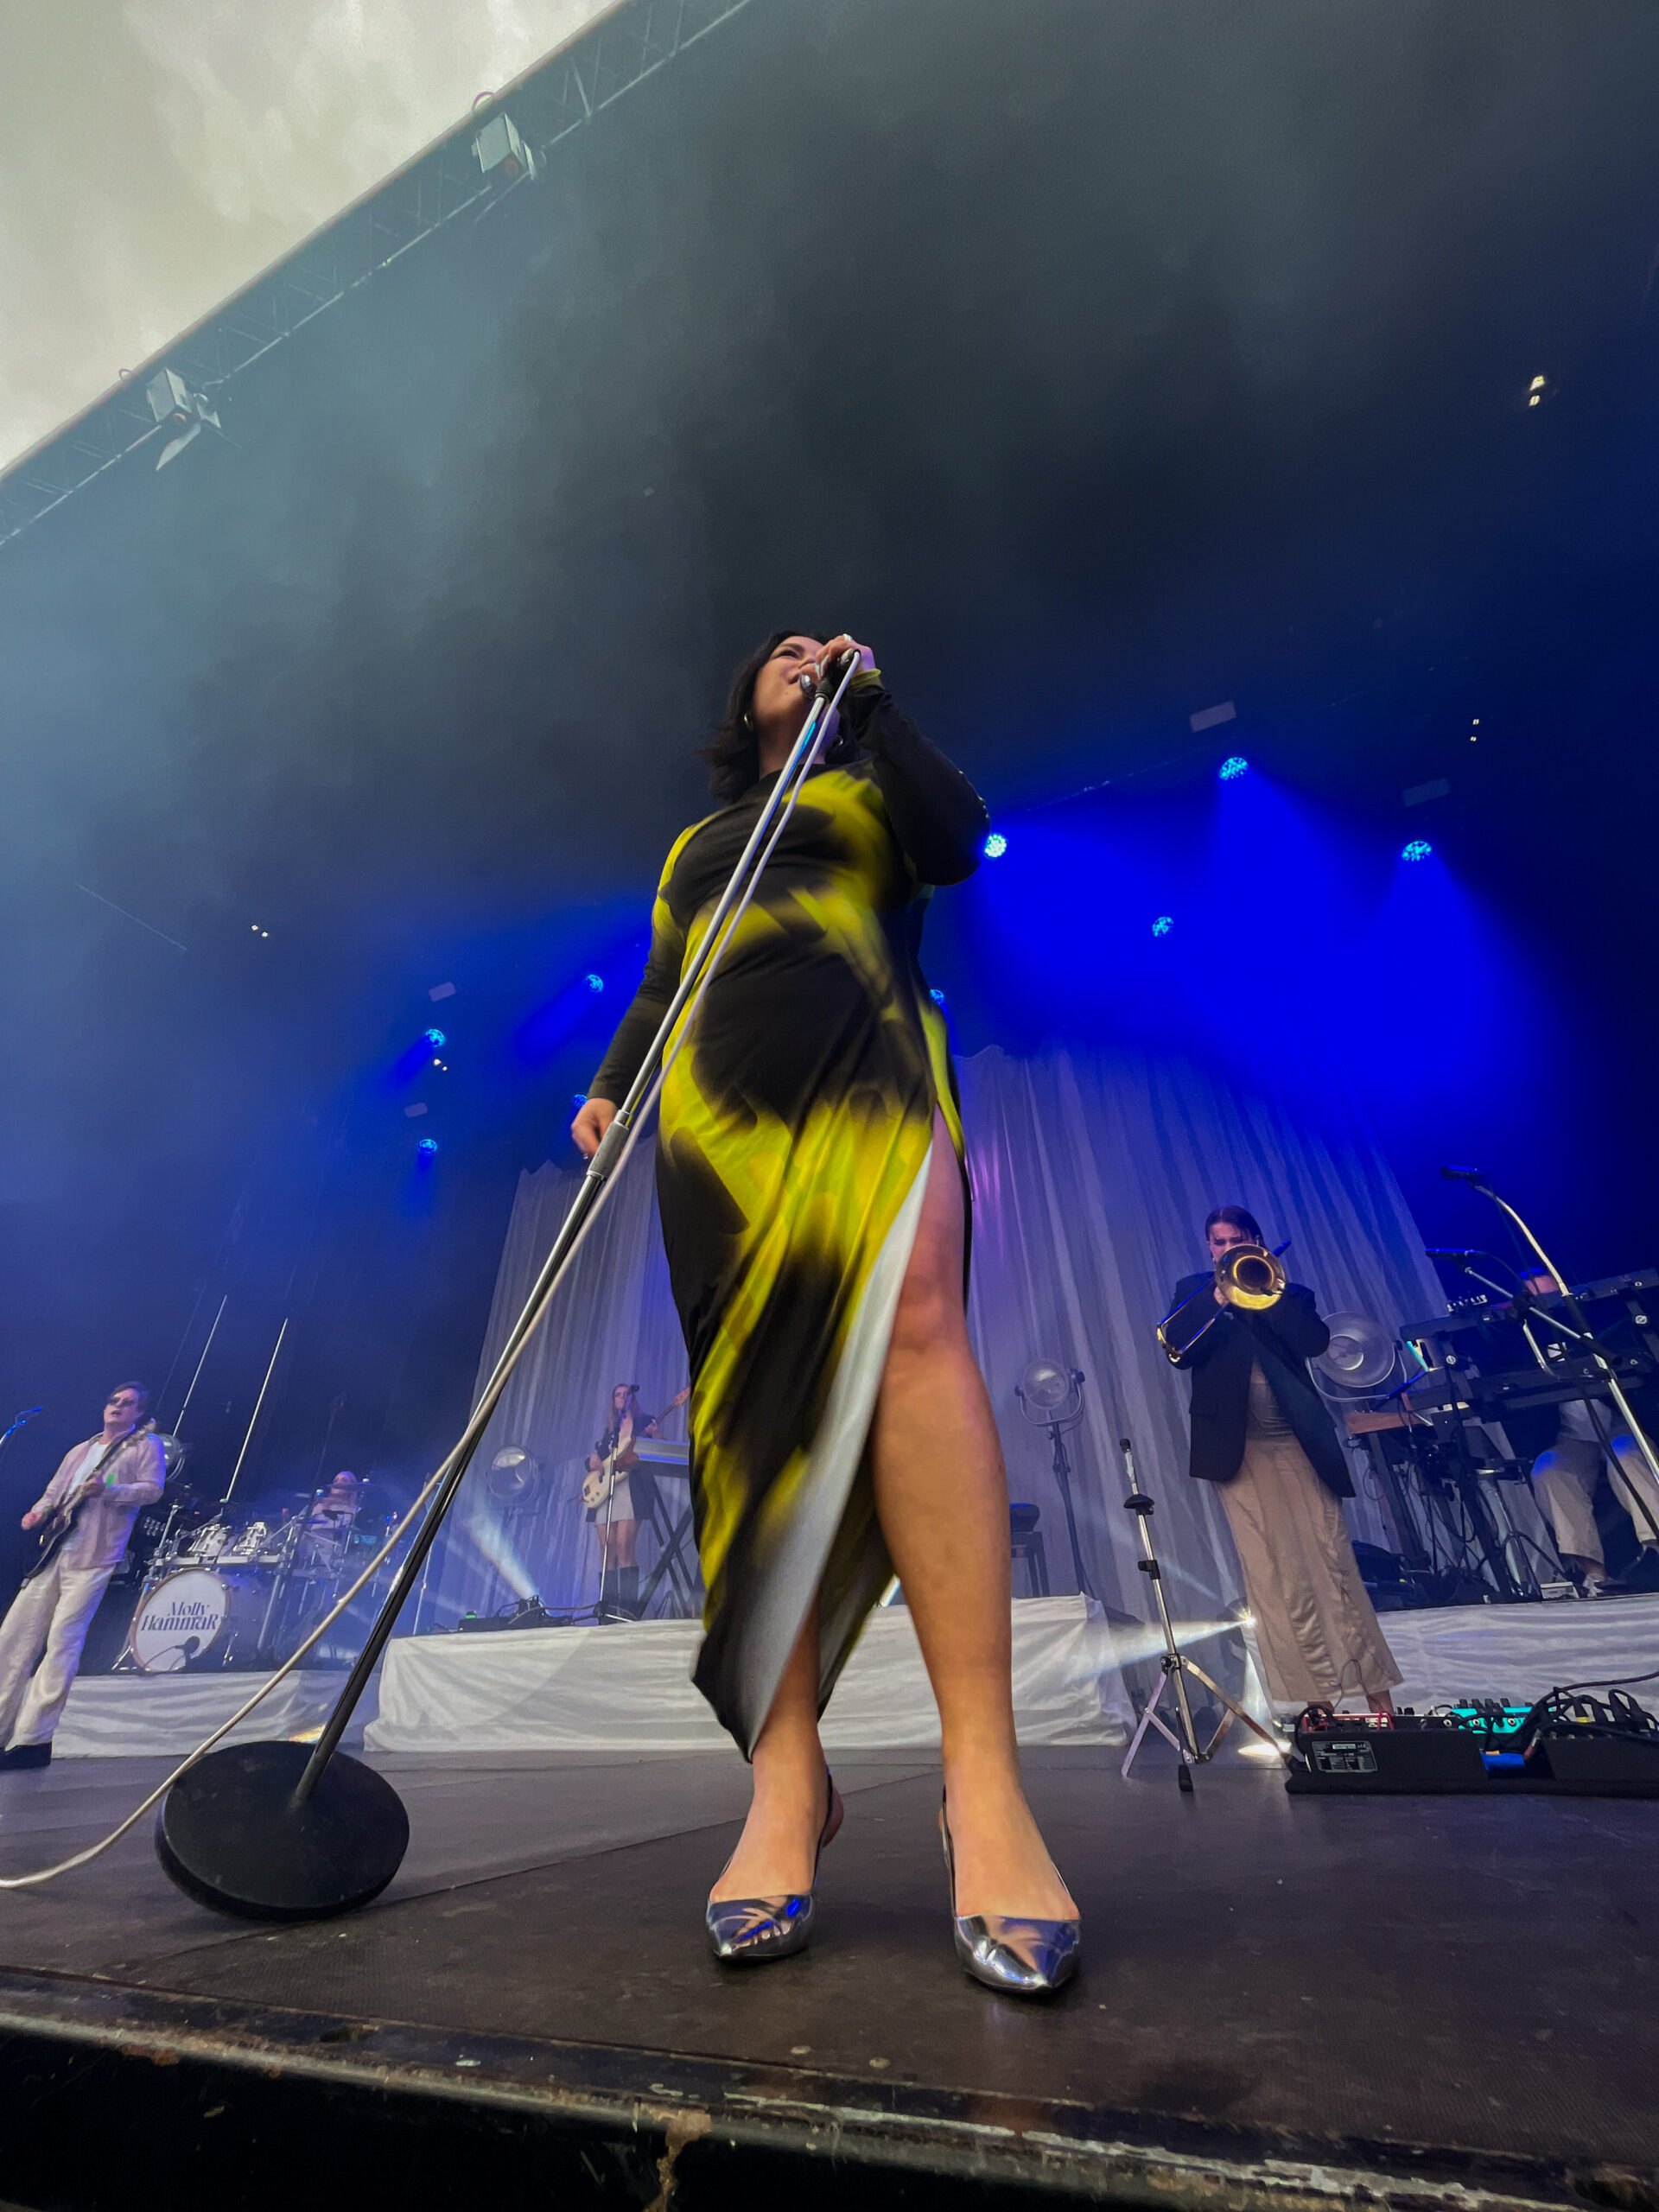 Molly Hammar uppträder på scen i svart och gul långklänning. Hon håller i ett mickstativ och sjunger. I bakgrunden syns bandet och den stora scenen.